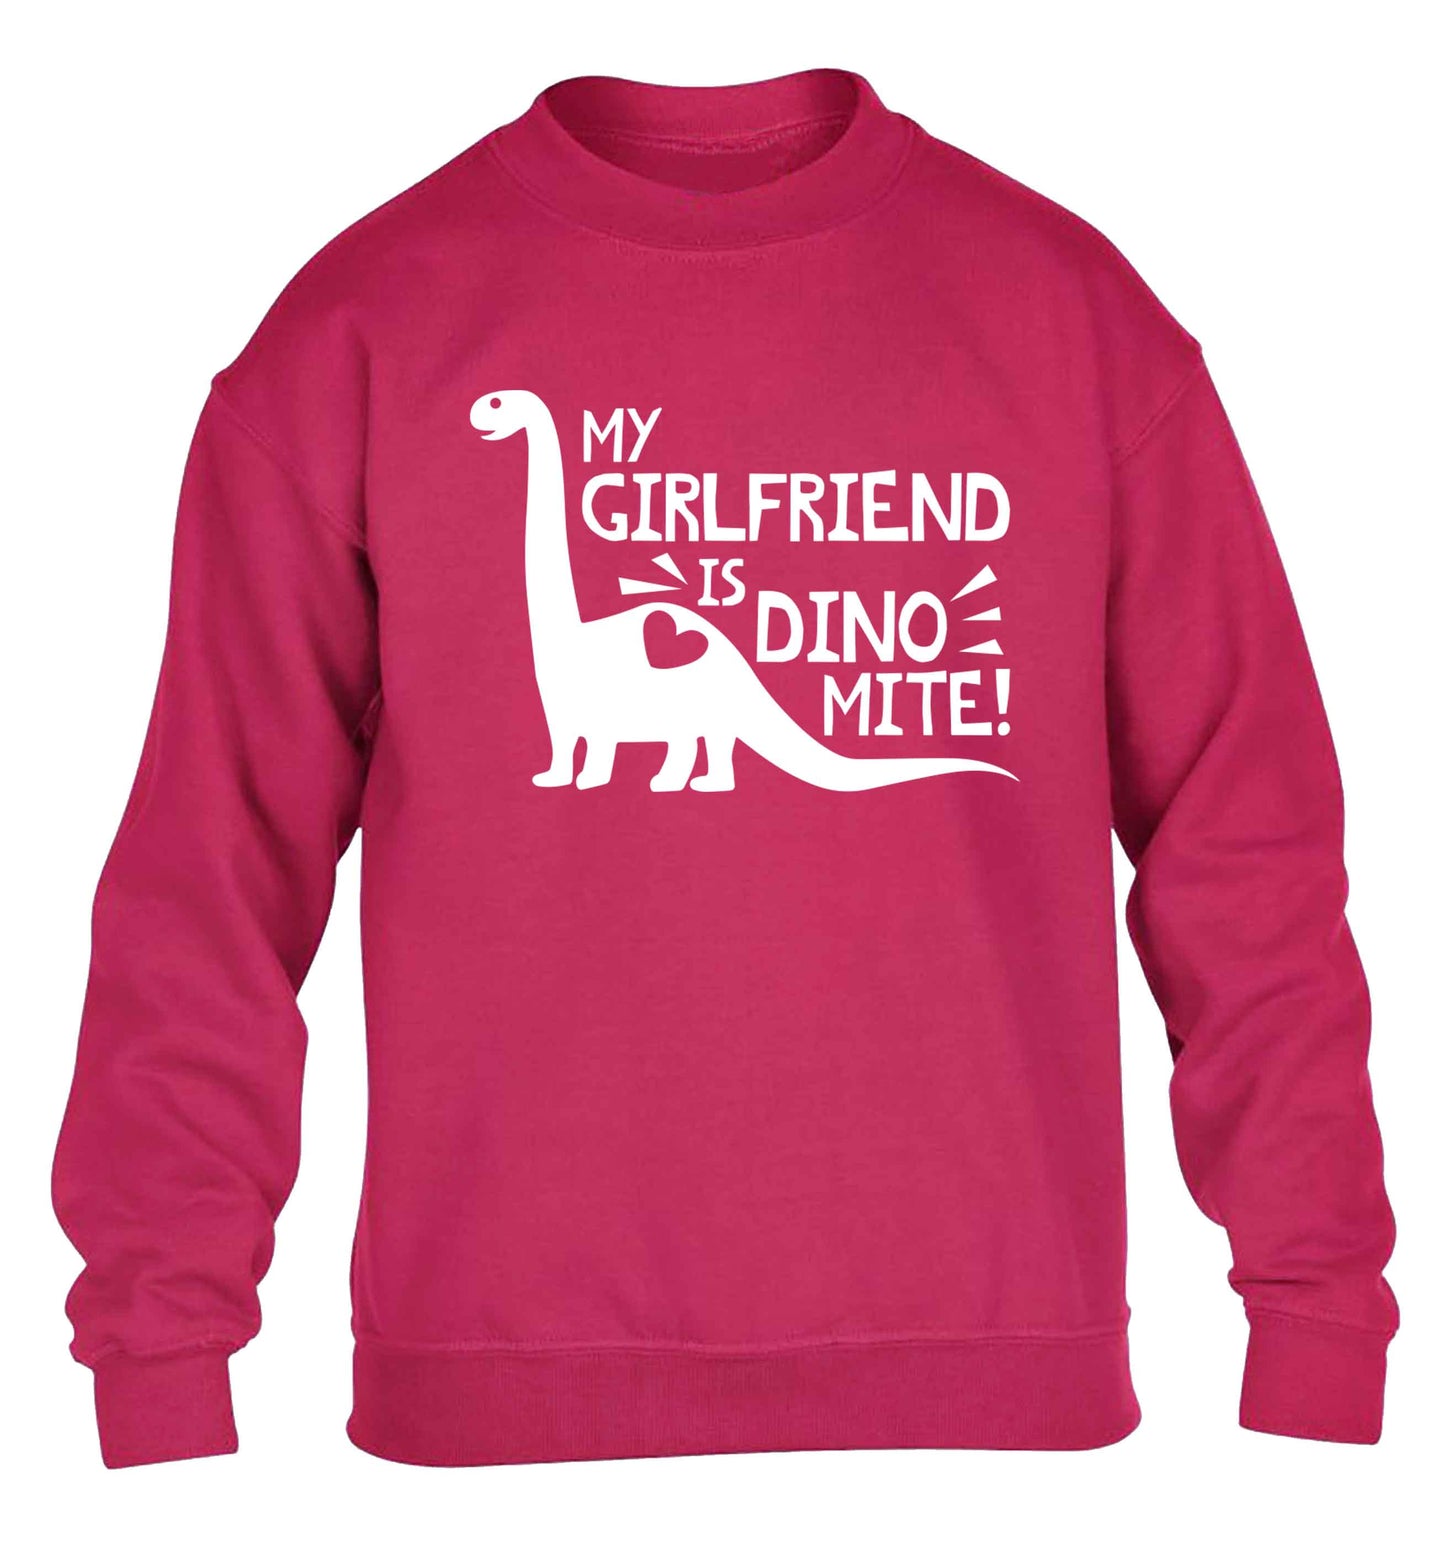 My girlfriend is dinomite! children's pink sweater 12-13 Years